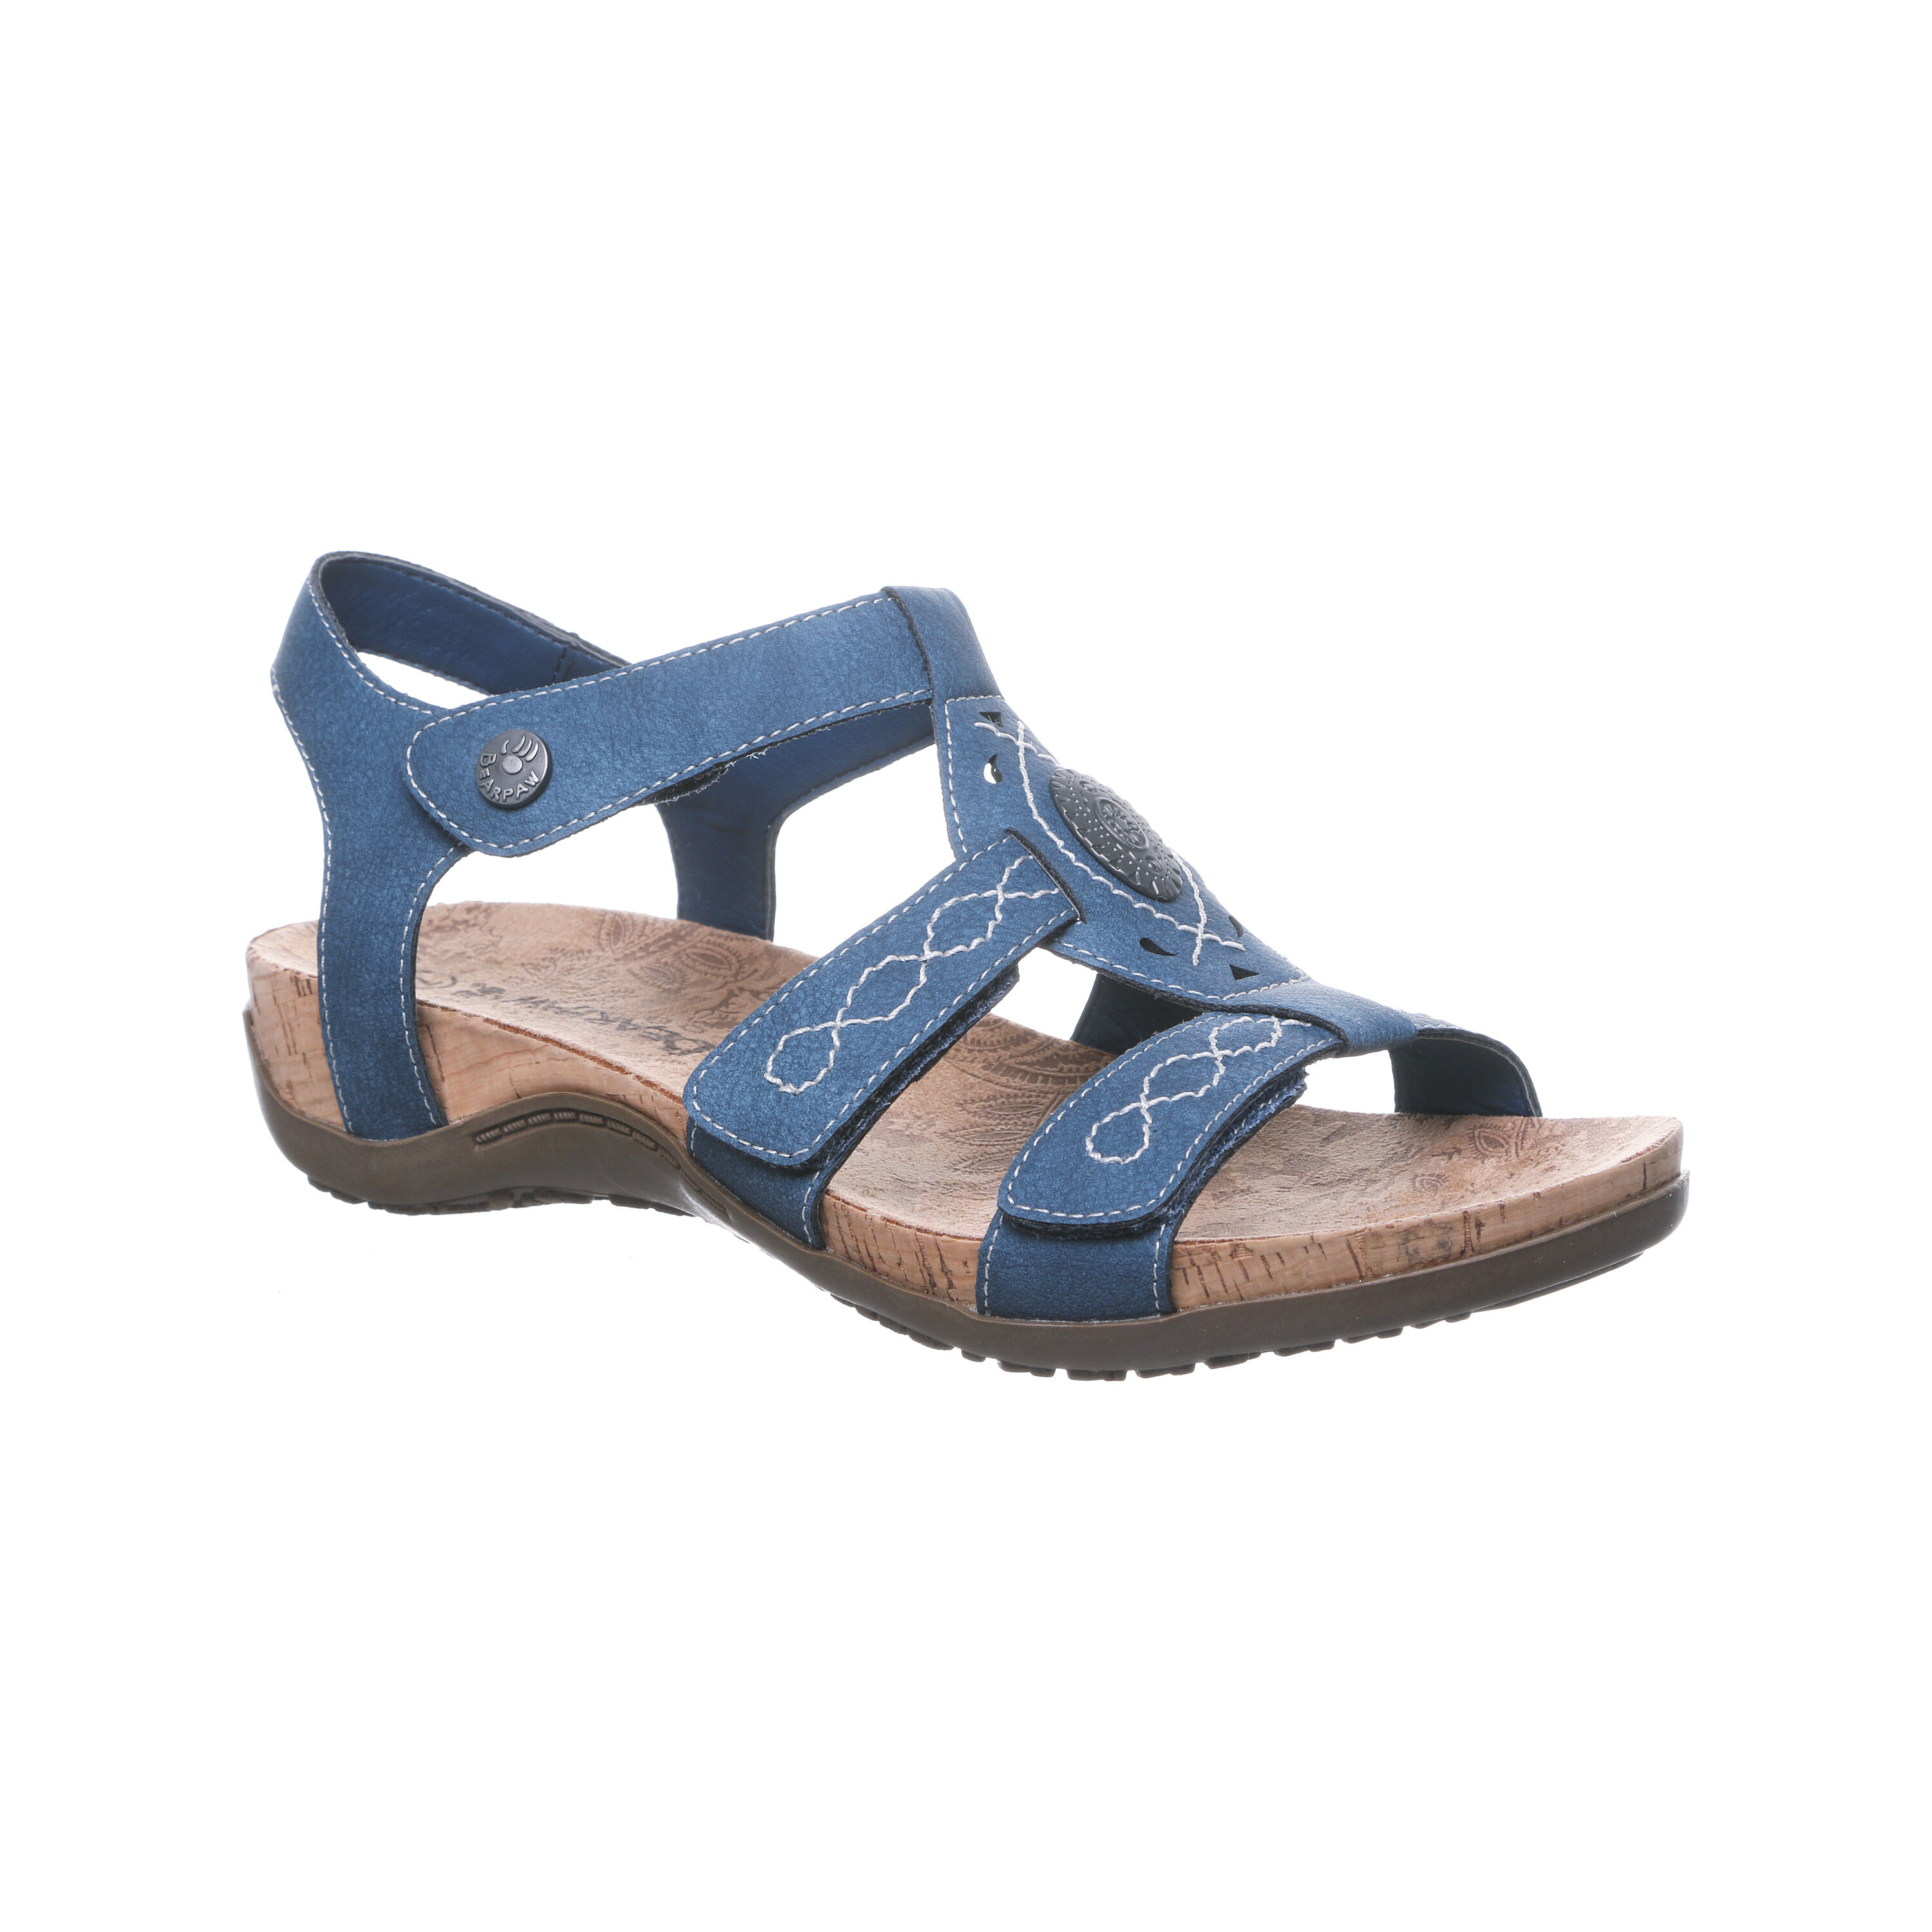 Wide Width Women's Ridley Ii Sandals by BEARPAW in Blue (Size 10 W)